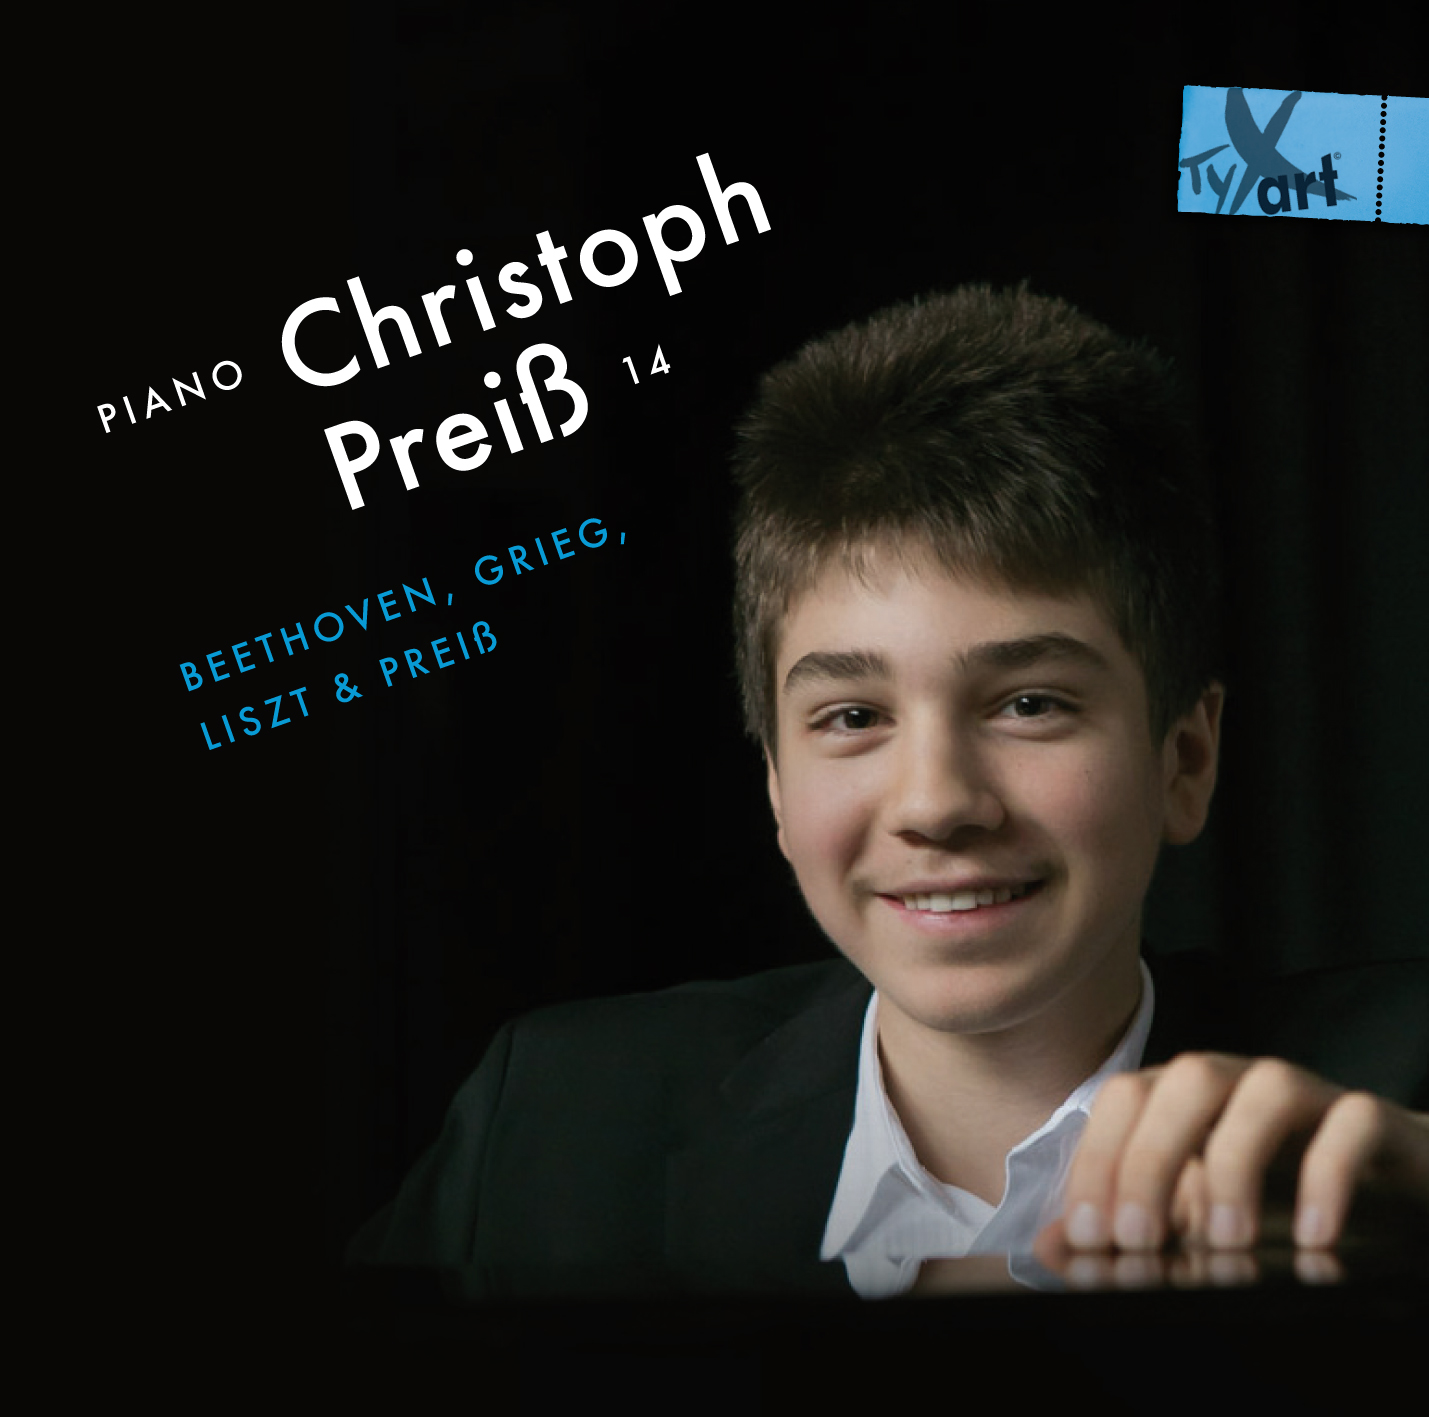 Christoph Preiß, 14, Piano: Beethoven, Grieg, Liszt und Preiß